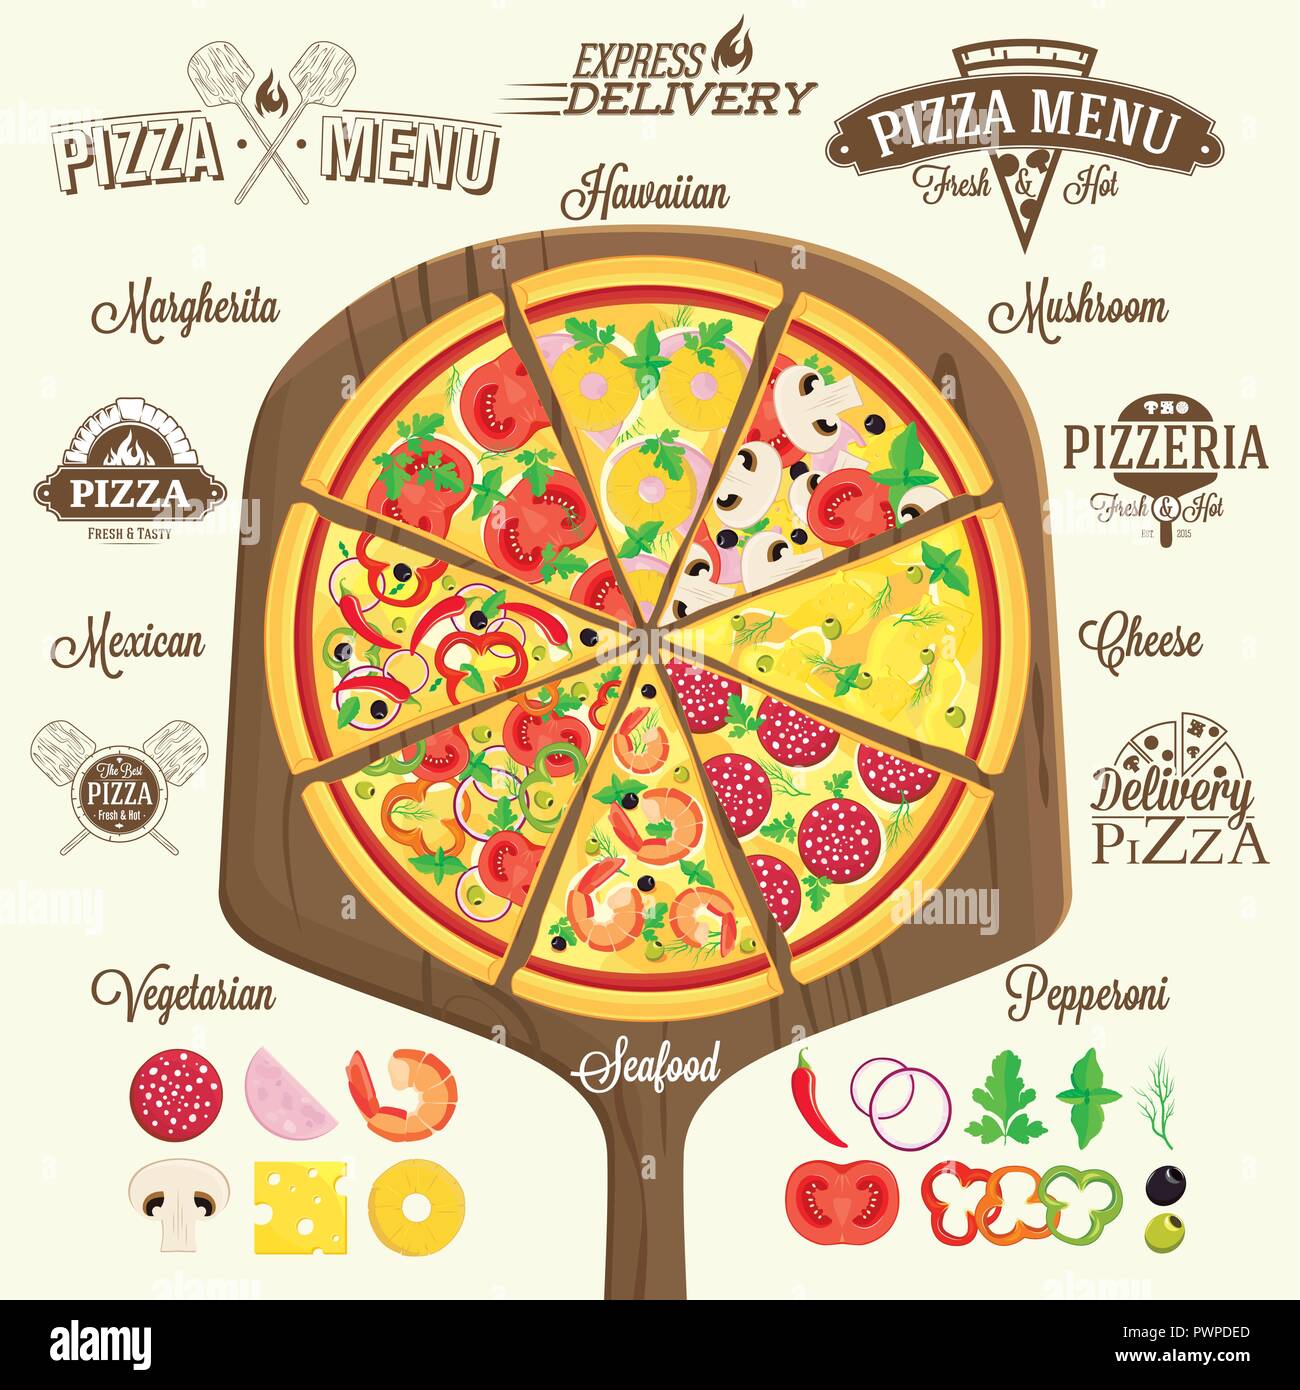 Pizza menu, Etiketten und gestalterische Elemente für Ihr Logo Design Template Stock Vektor